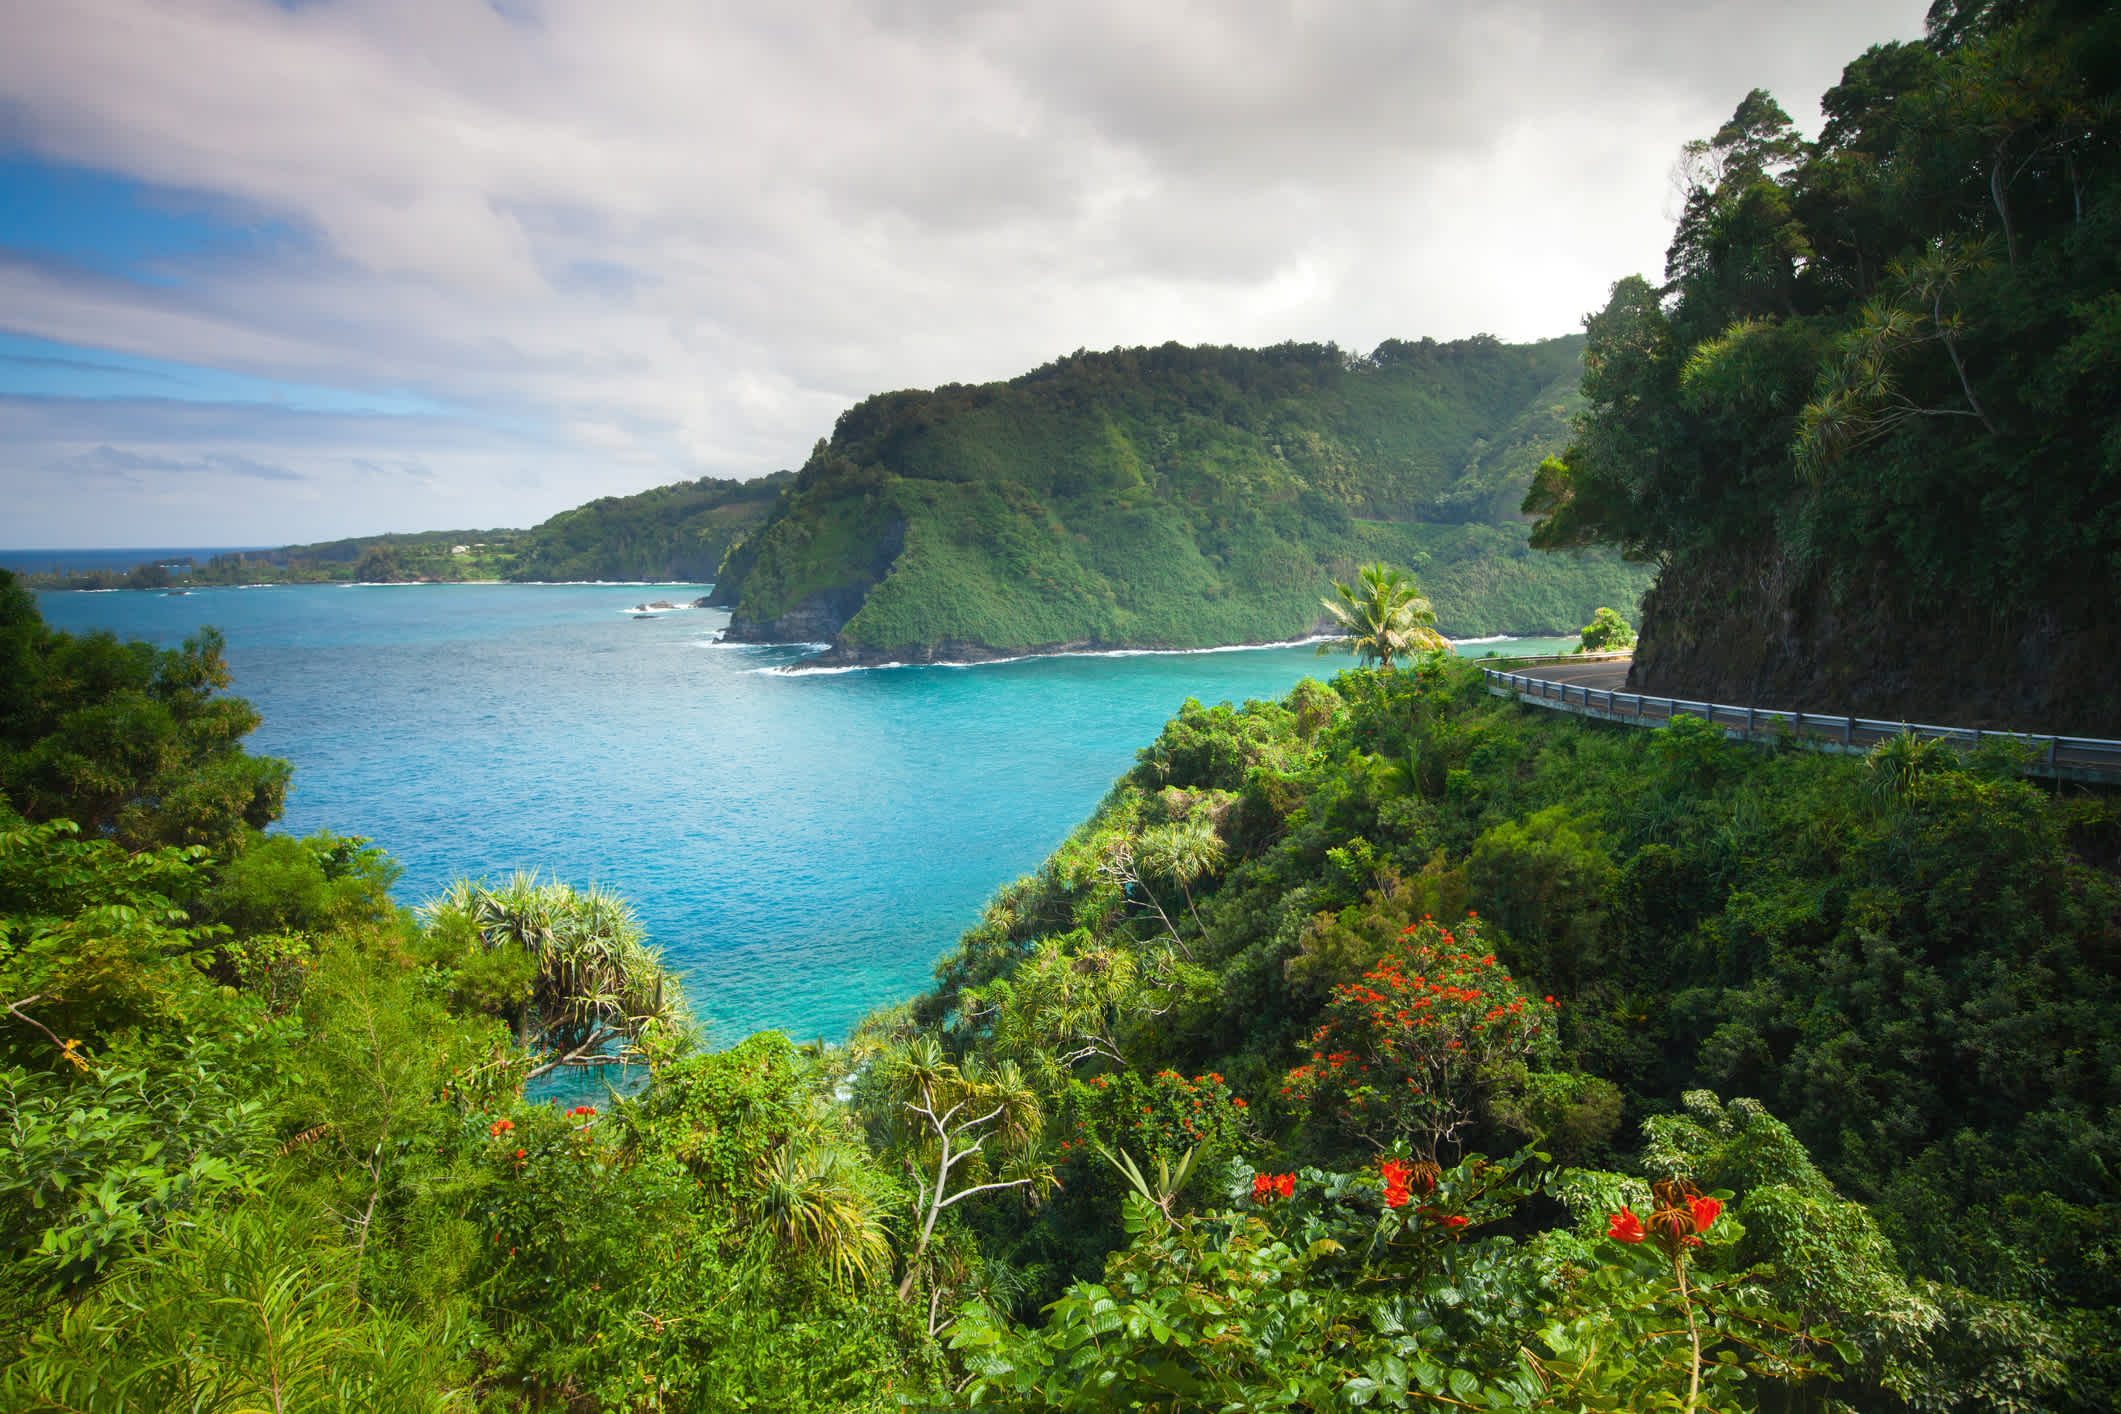 La route côtière mène à Hana, sur l'île de Maui, le long d'une végétation dense et de l'océan sauvage.